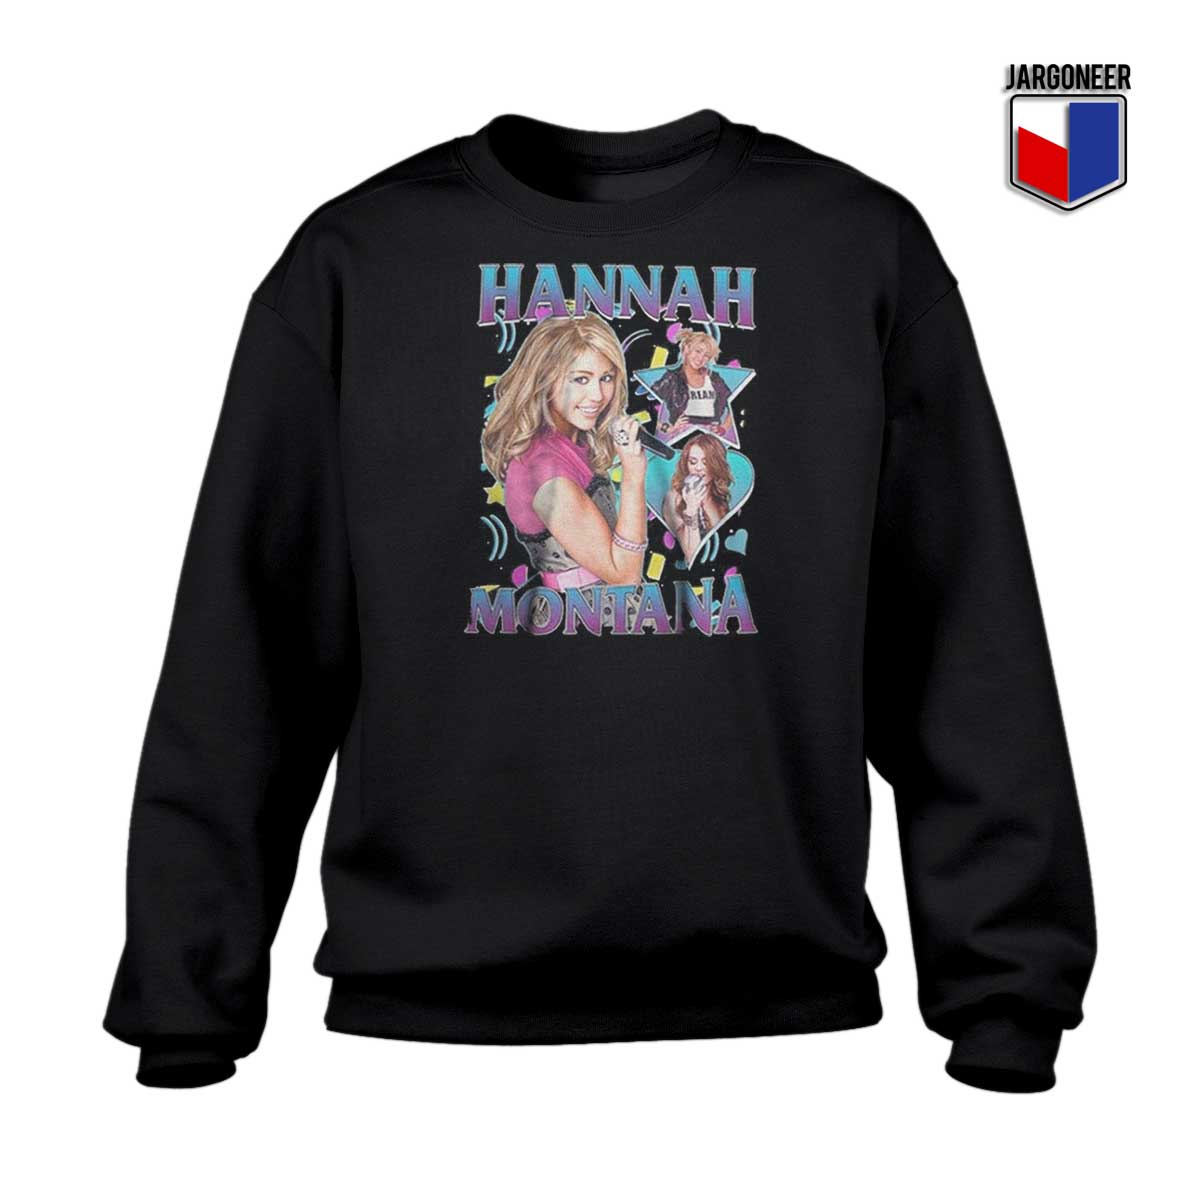 Hannah Montana Sweatshirt - Shop Unique Graphic Cool Shirt Designs